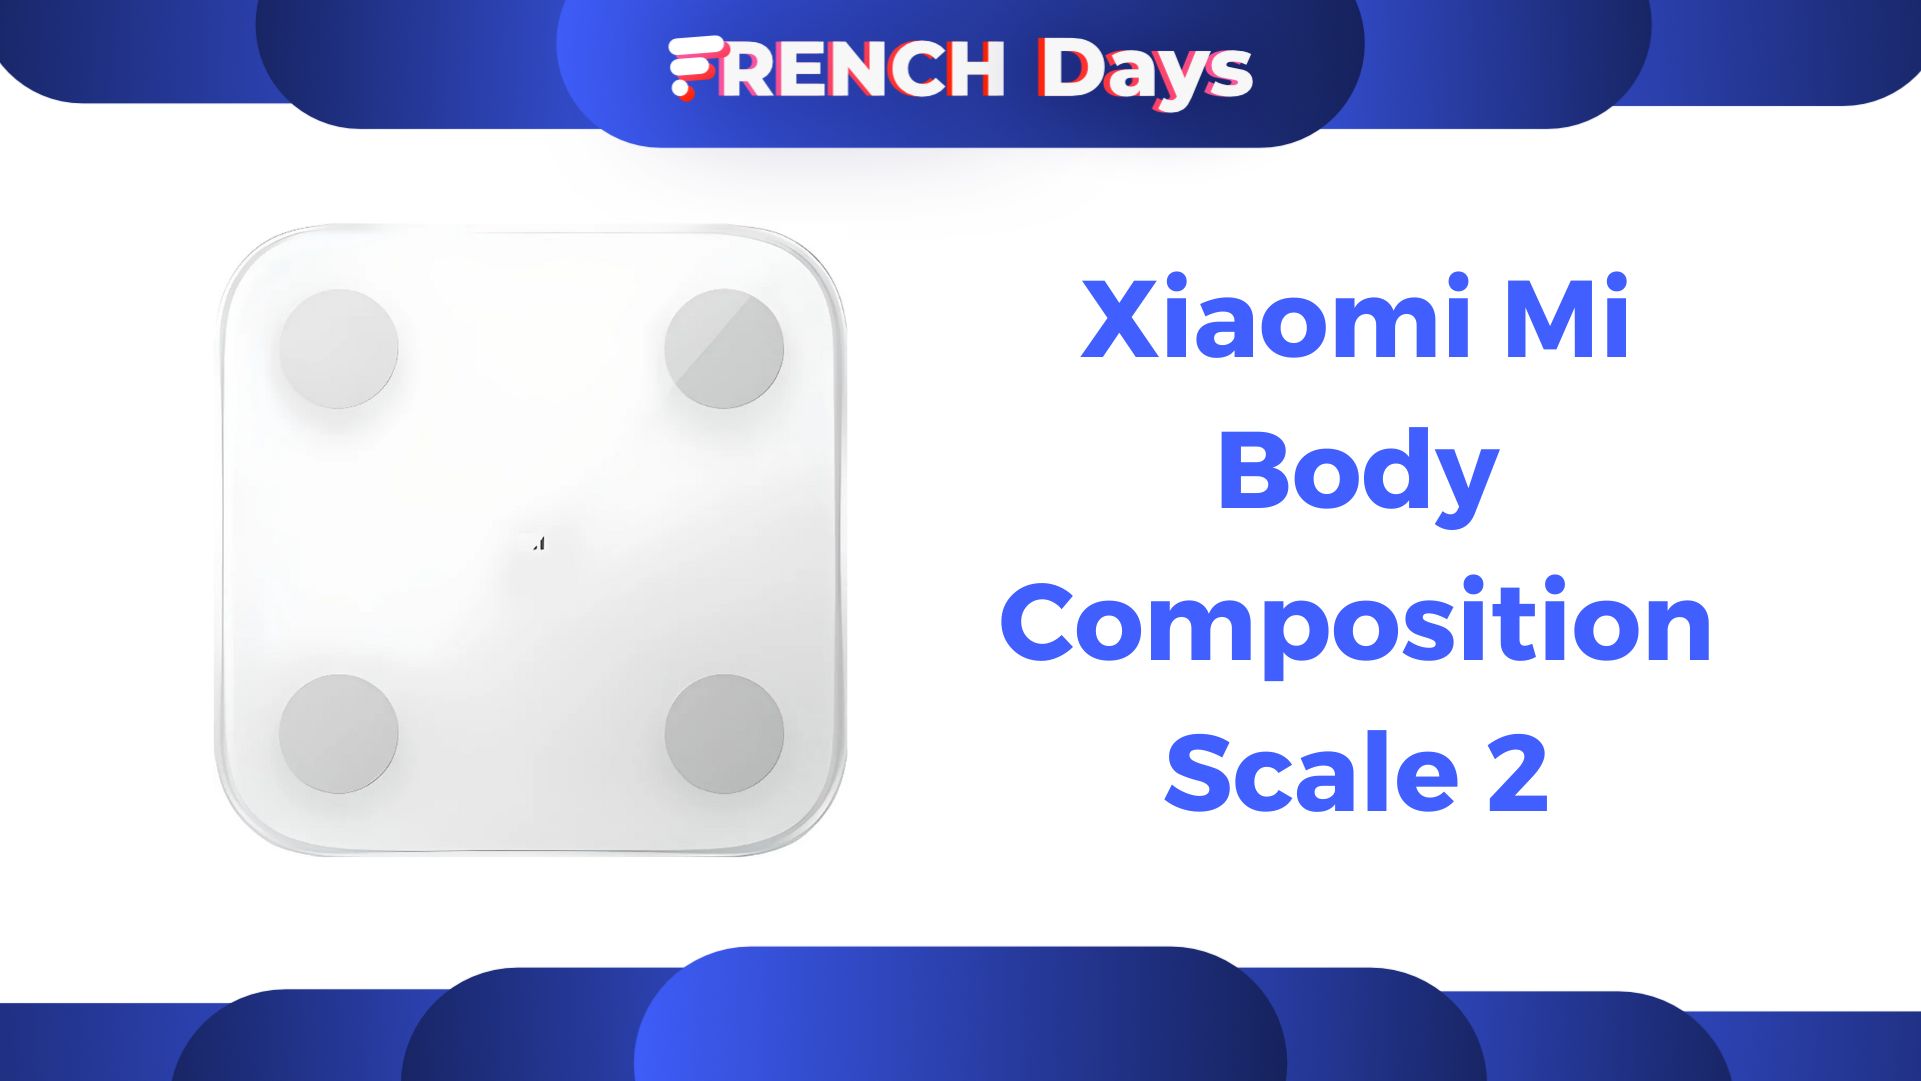 À seulement 15 €, la balance connectée de Xiaomi est encore plus abordable  grâce aux French Days